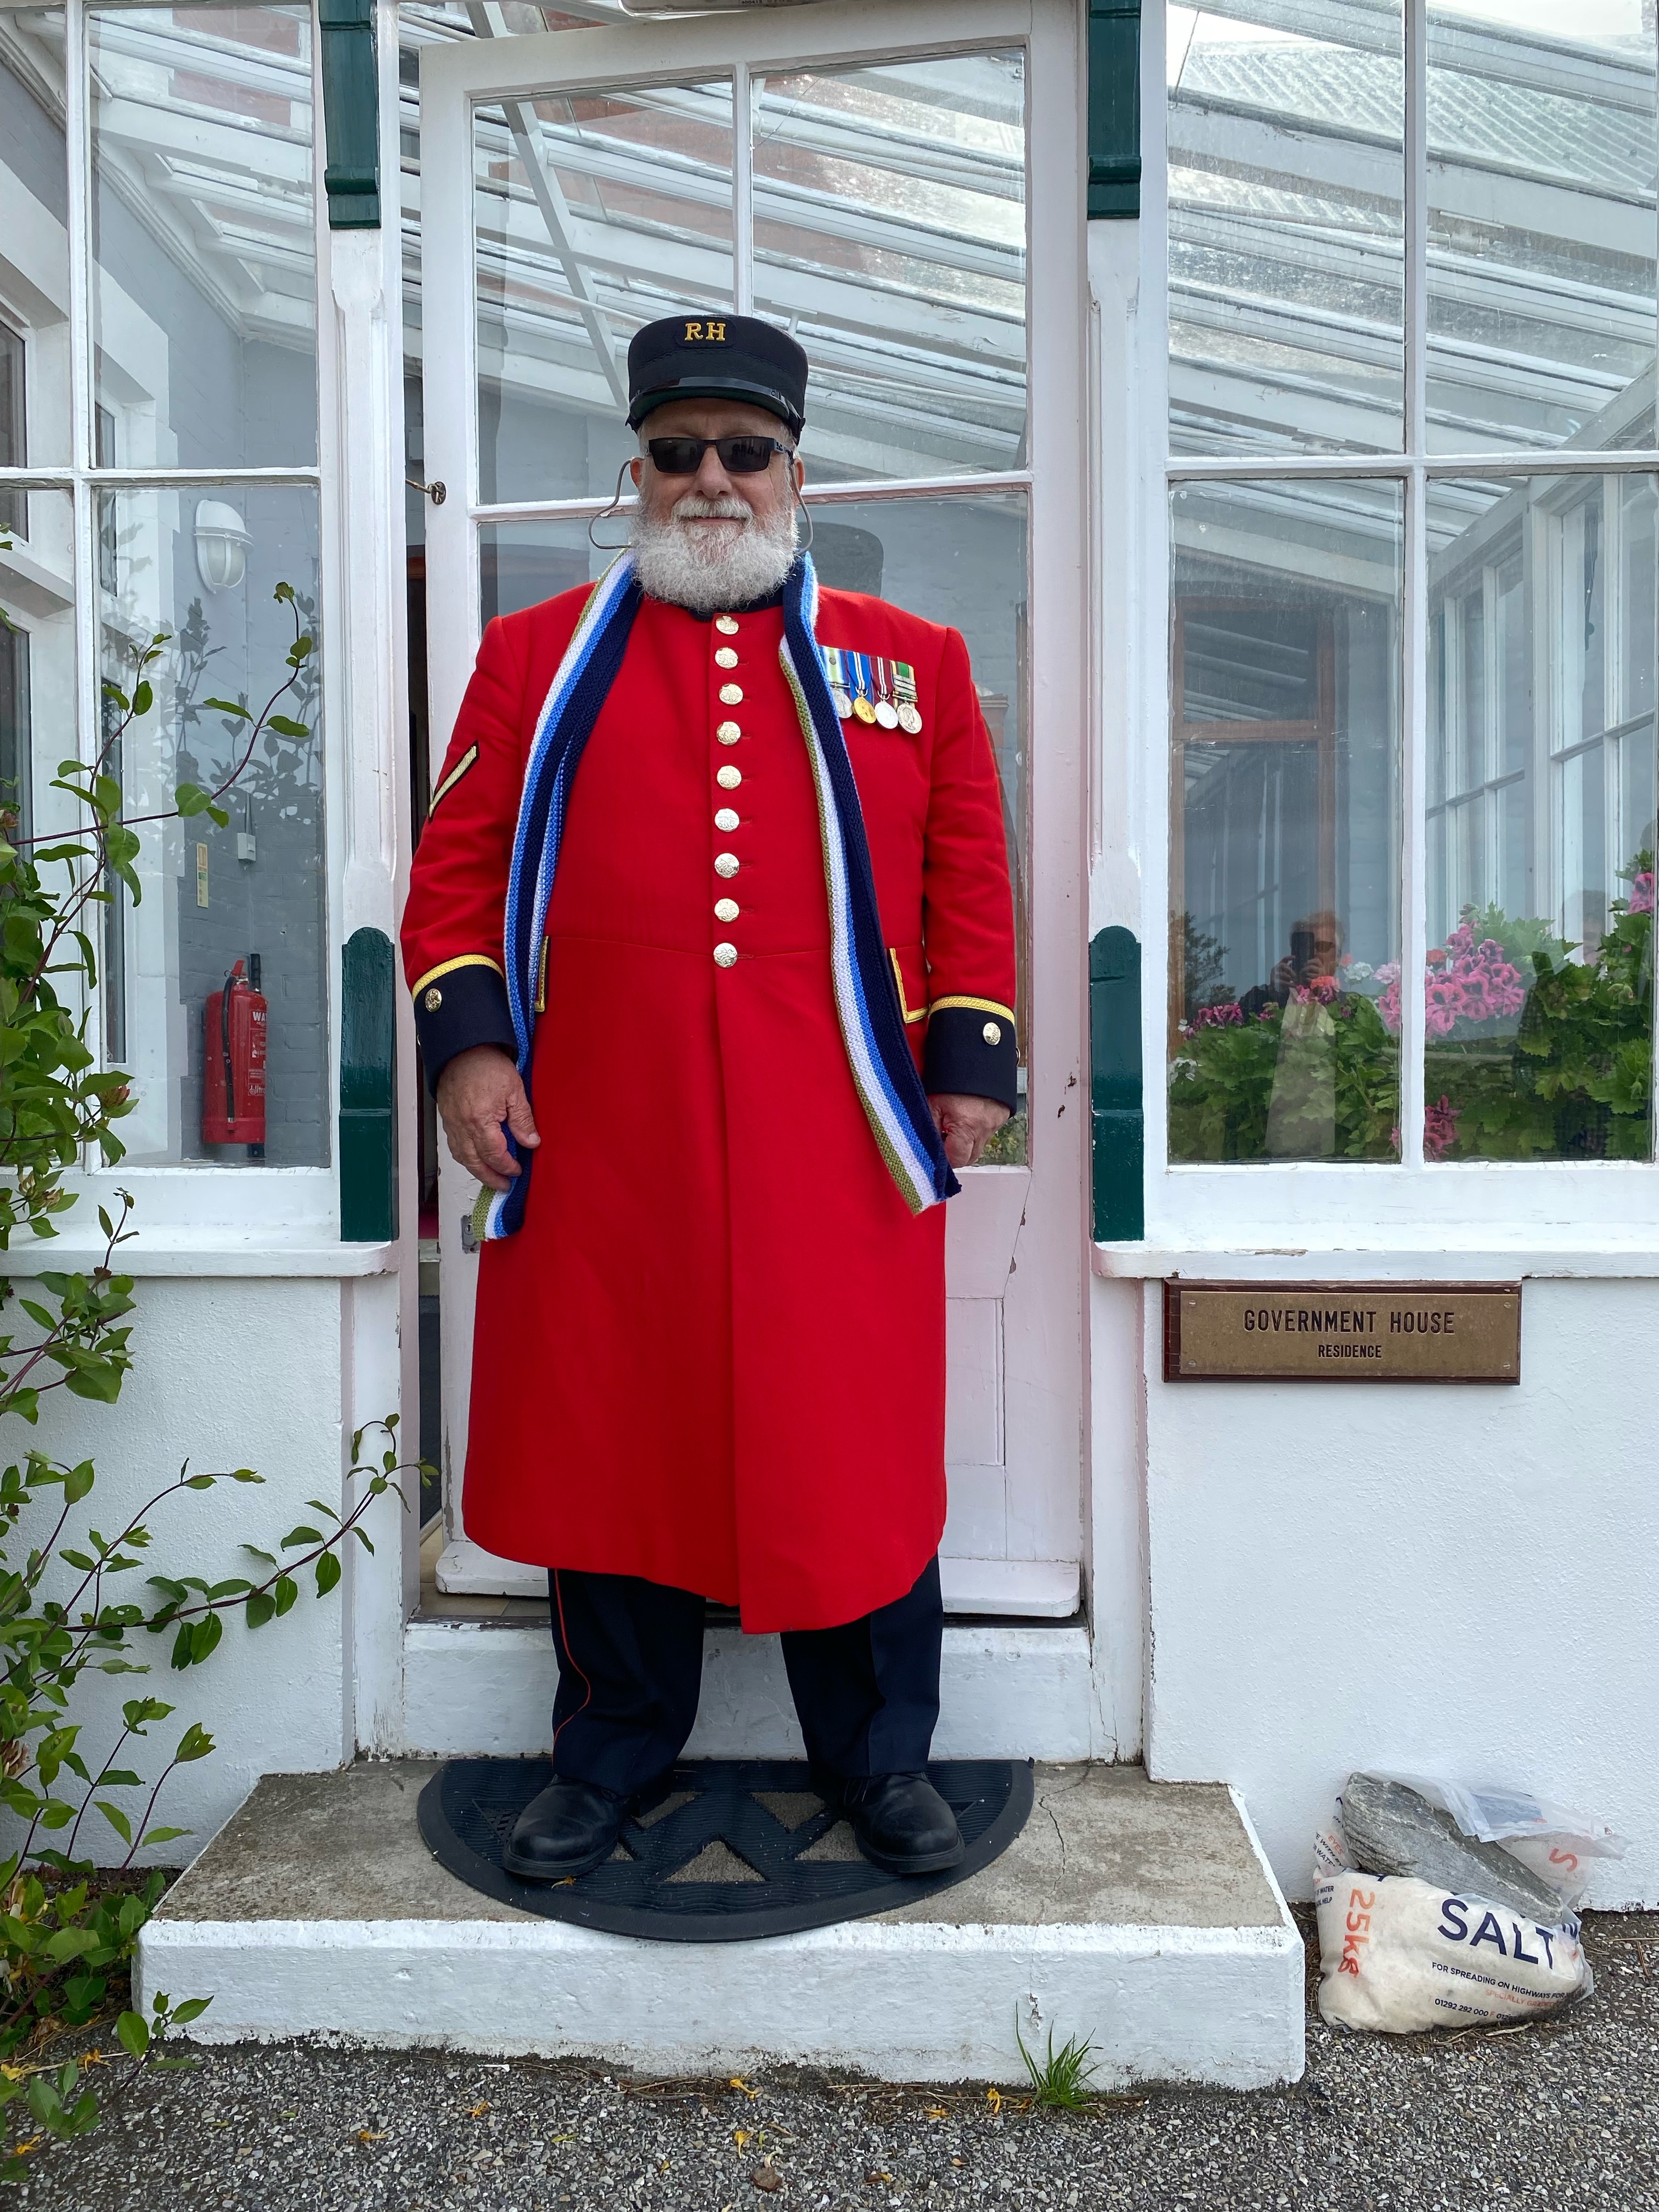 Chelsea Pensioner stood in front of glass door in scarlet uniform